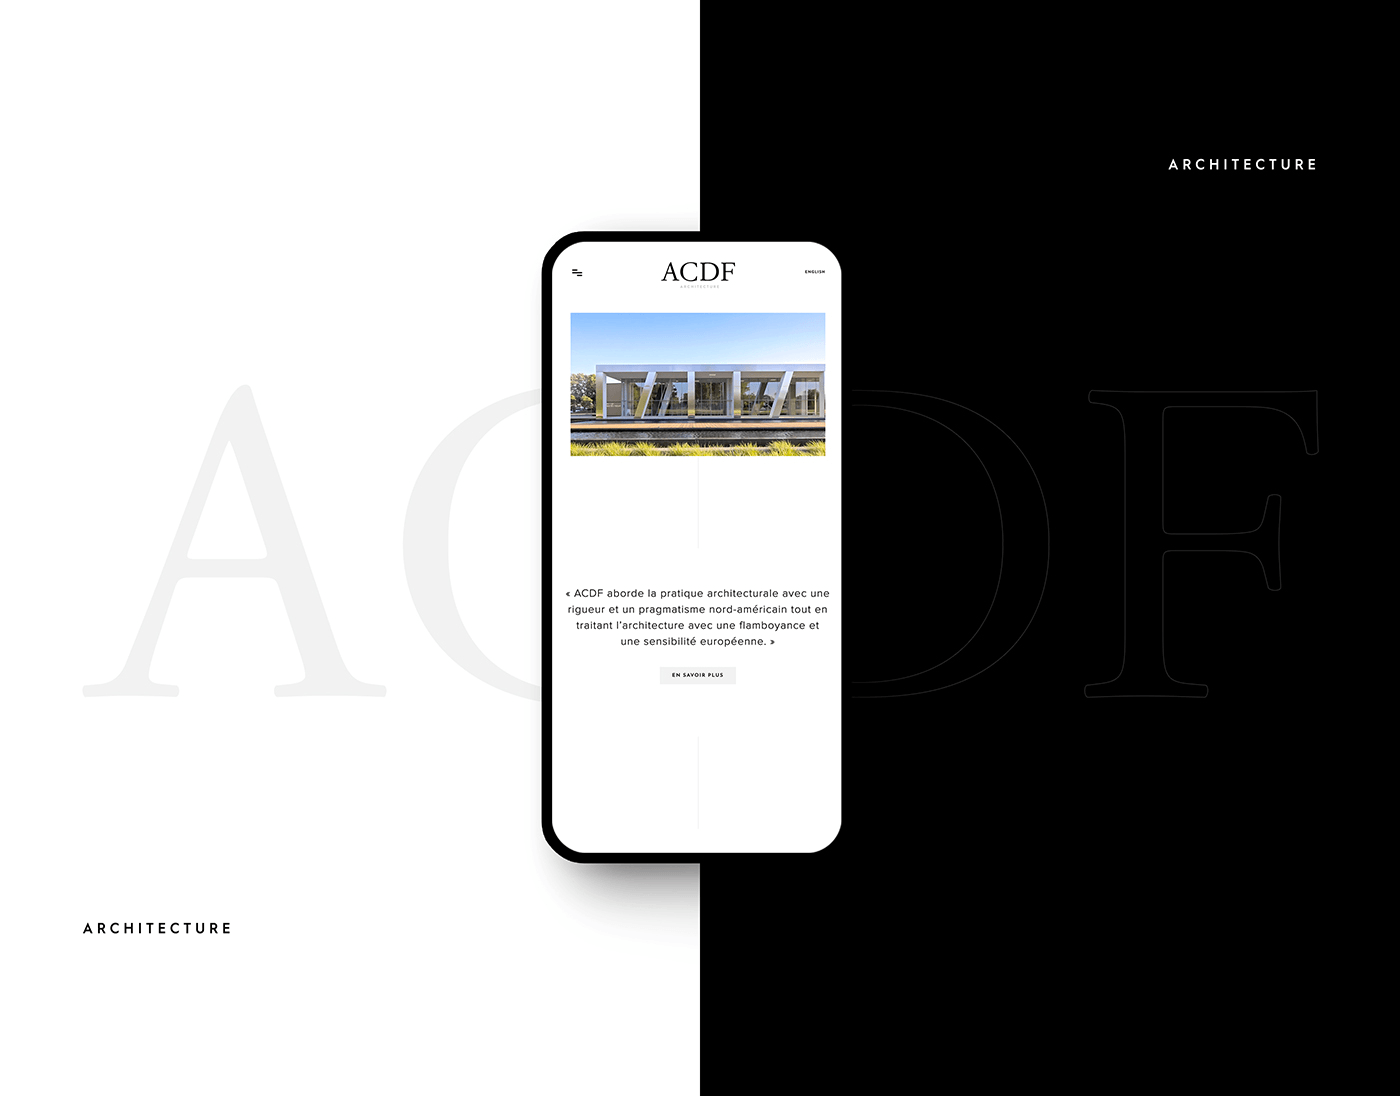 Conception de carte d'affaire, logo, papeterie et site web bilingue pour ACDF Architecture - firme d'architectes basé à Montréal et St-Hyacinthe / 2018 - Réalisation signée Projex Media